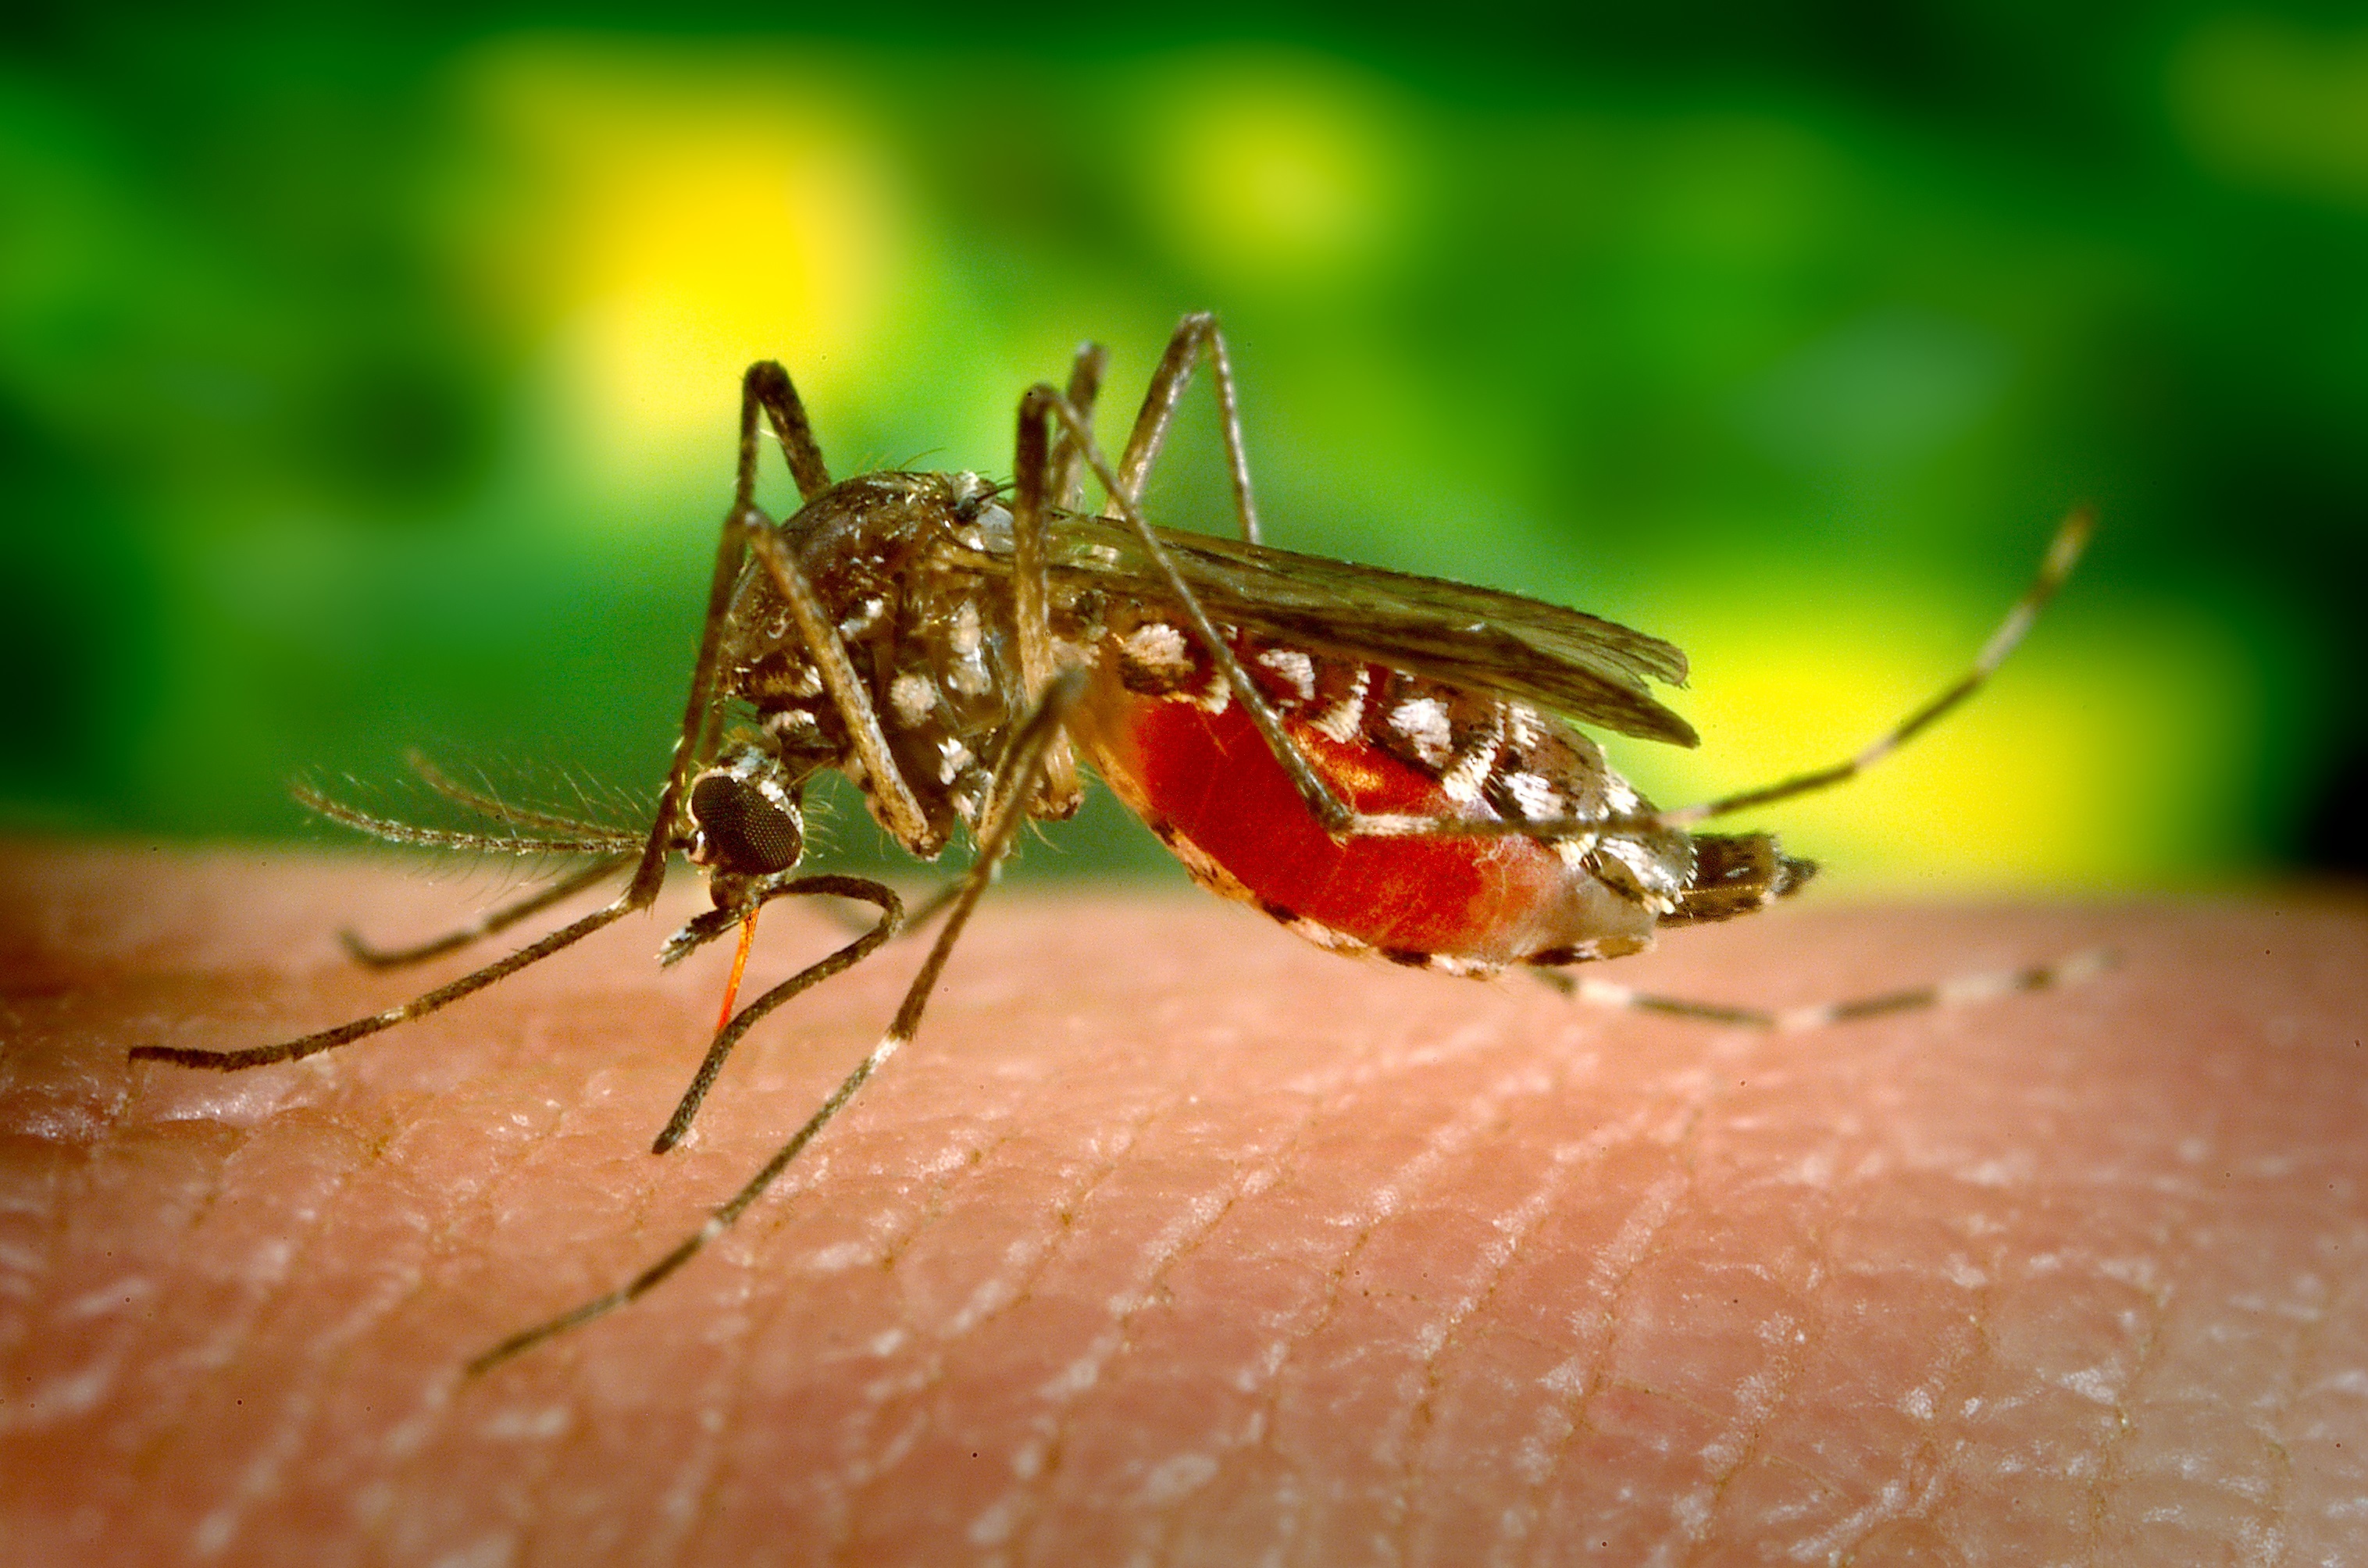 Mosquito closeup photo